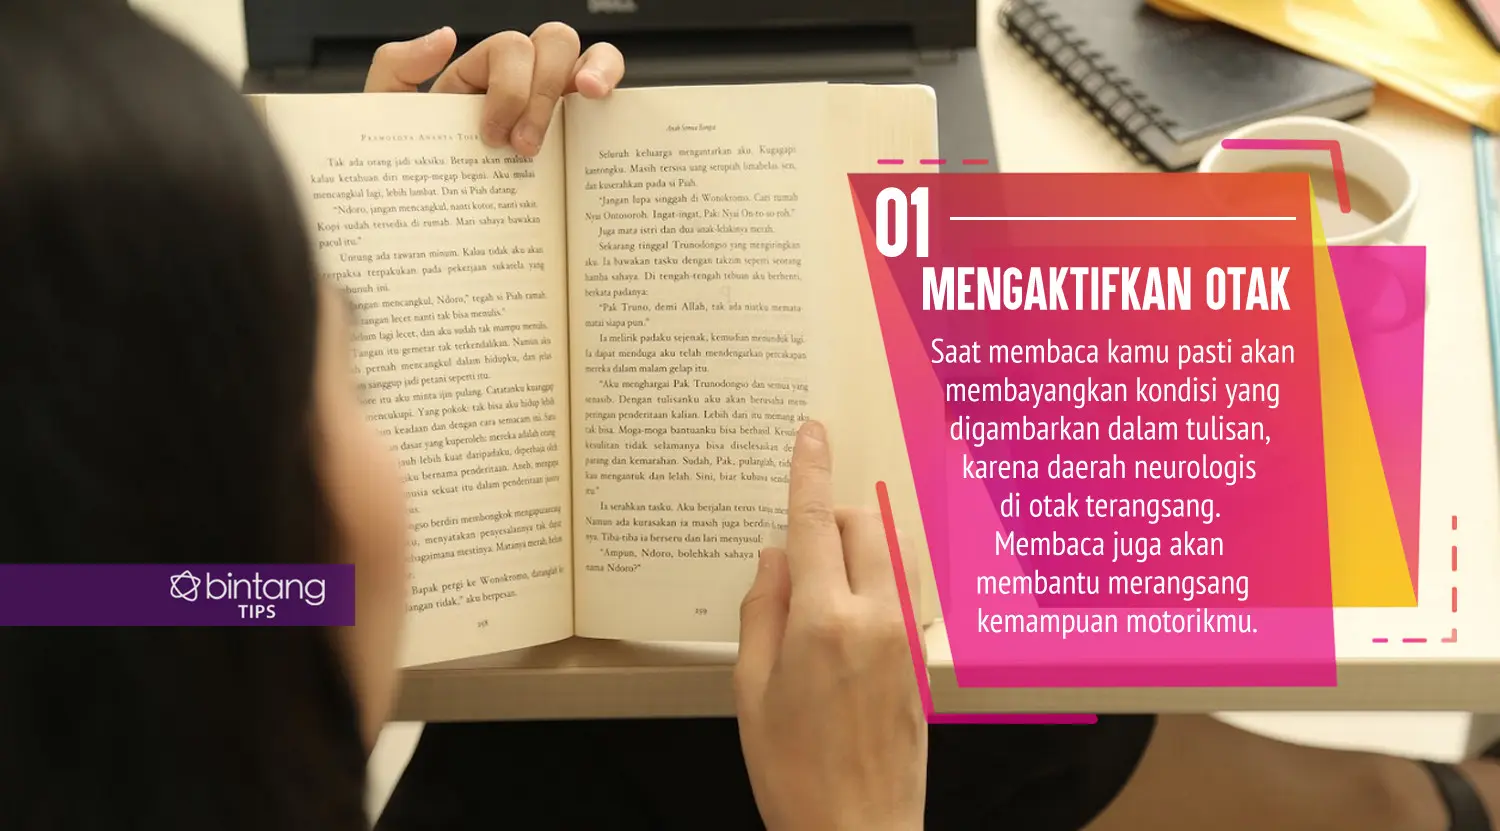 Ternyata membaca juga bermanfaat untuk kesehatan. (Foto: Daniel Kampua, Digital Imaging: Nurman Abdul Hakim/Bintang.com)